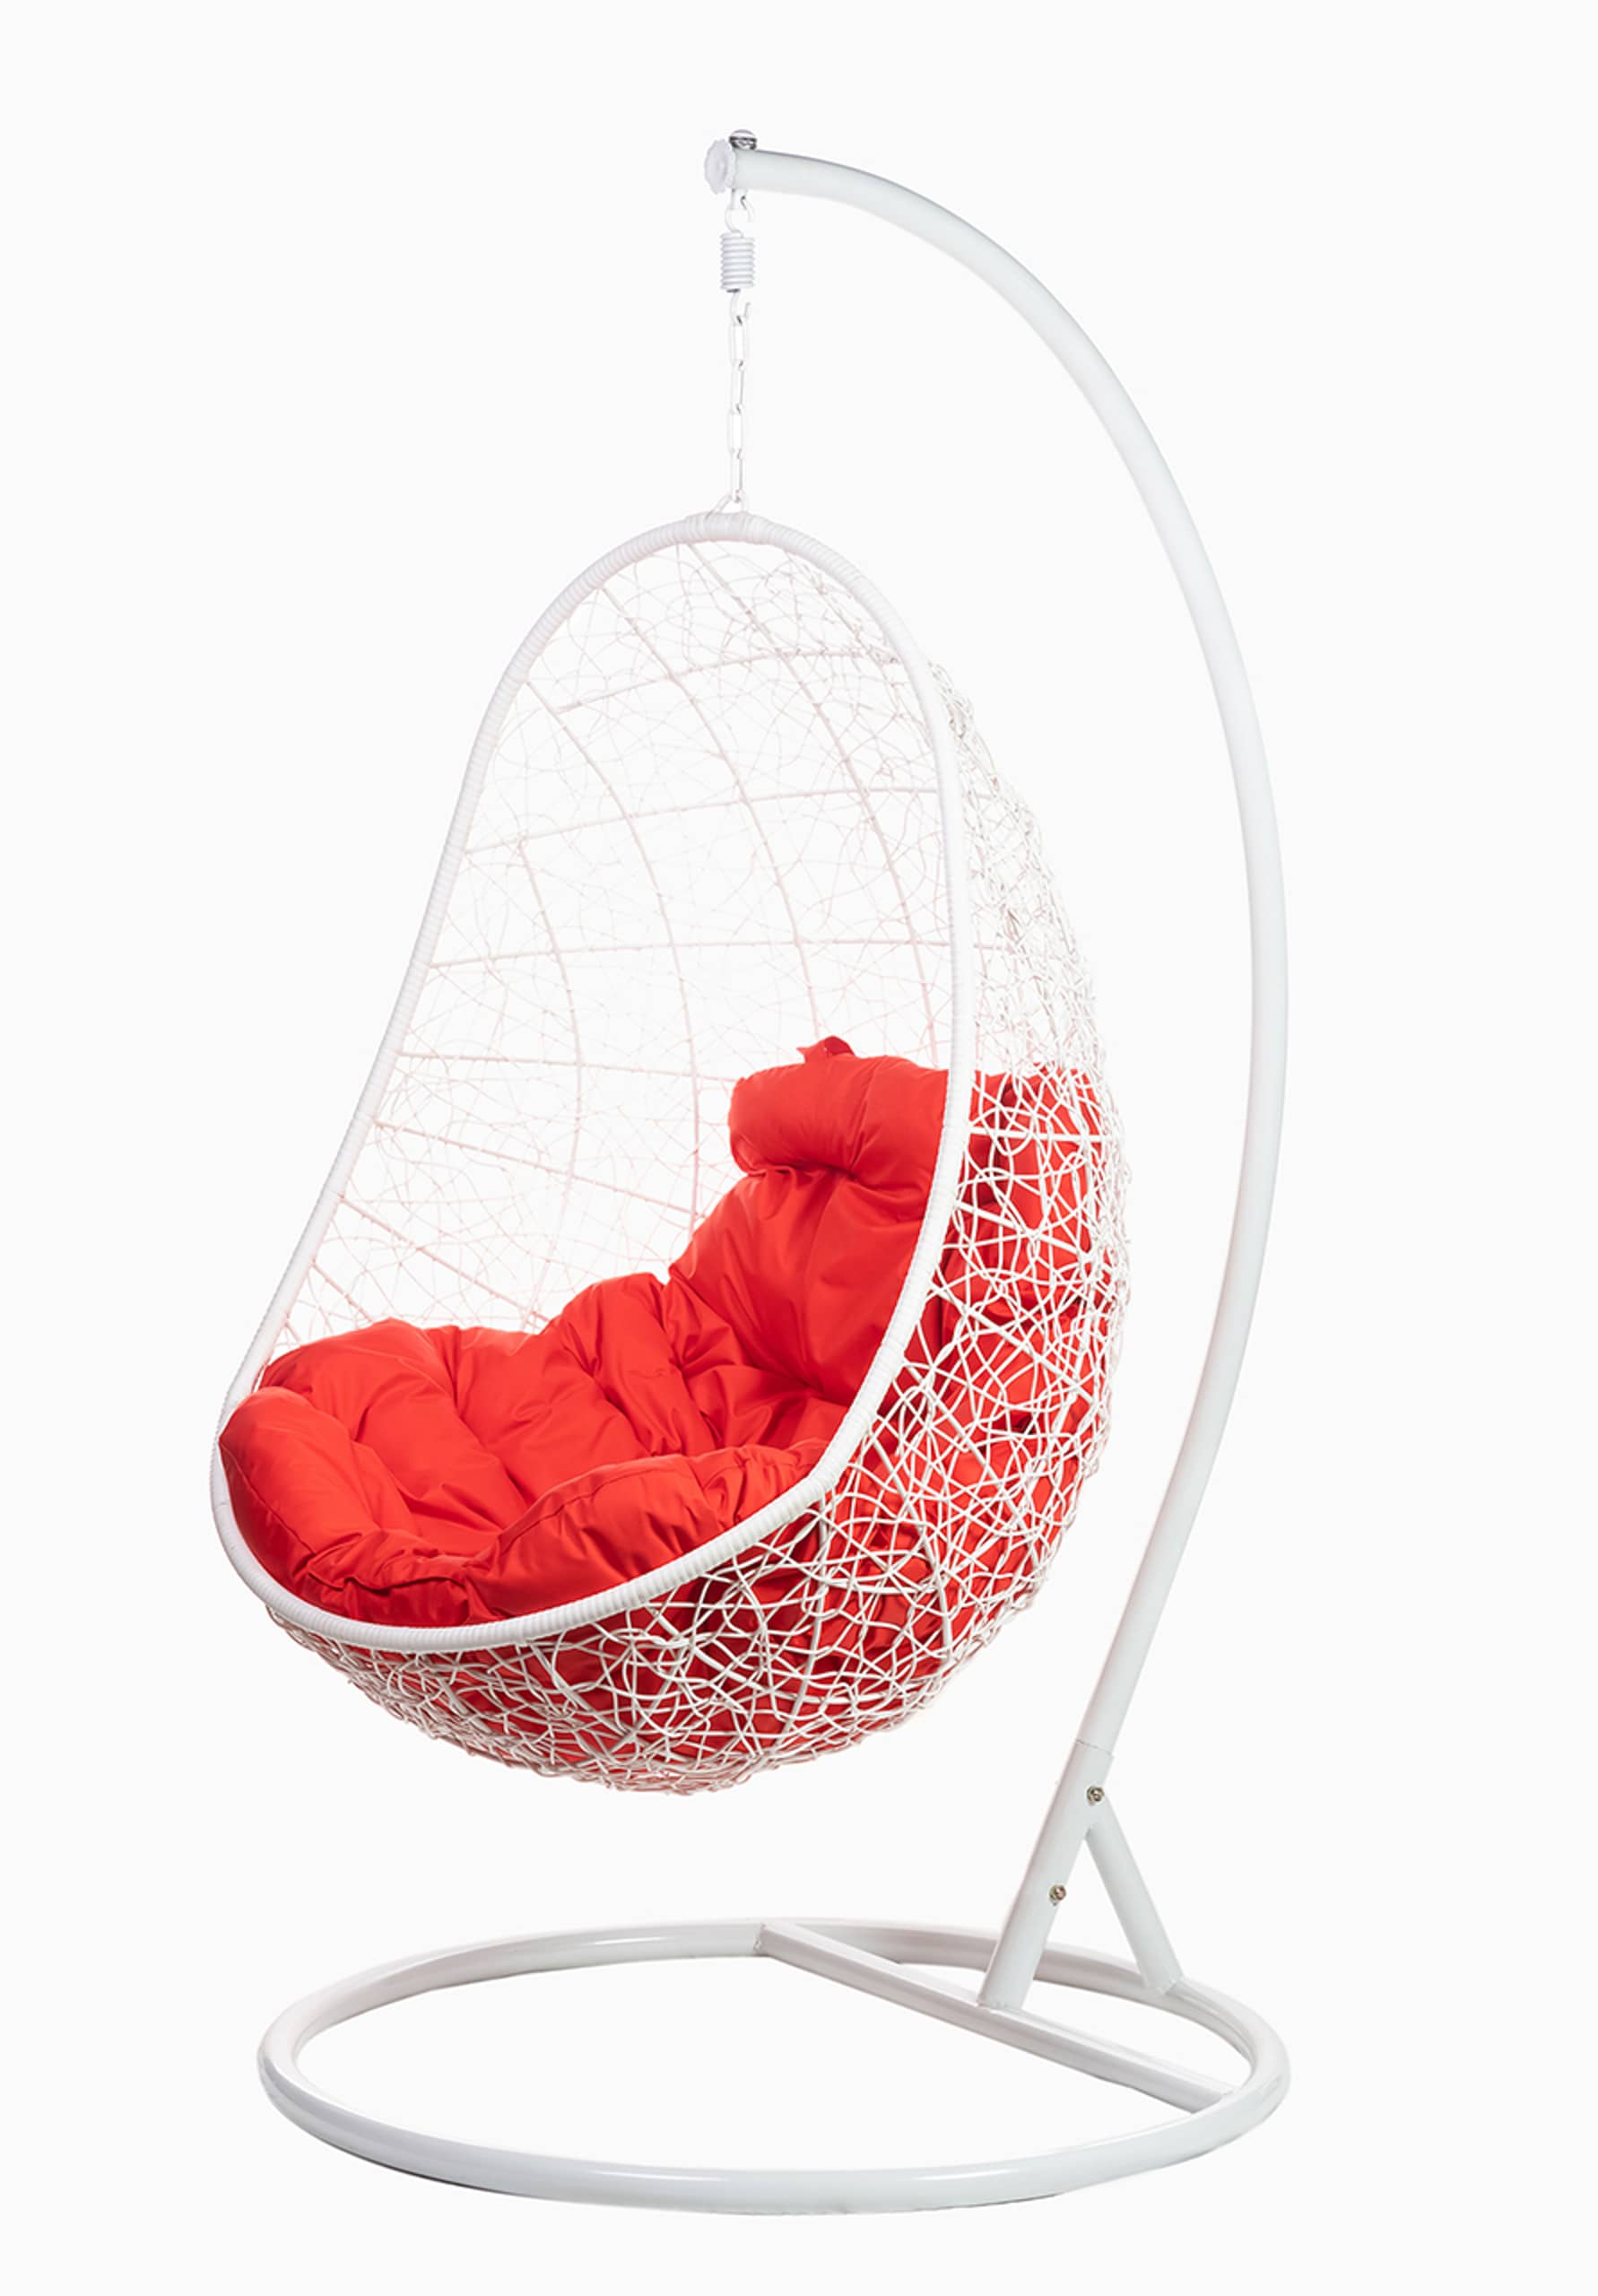 Кресло подвесноеFP 0228 красная подушка - изображение 1